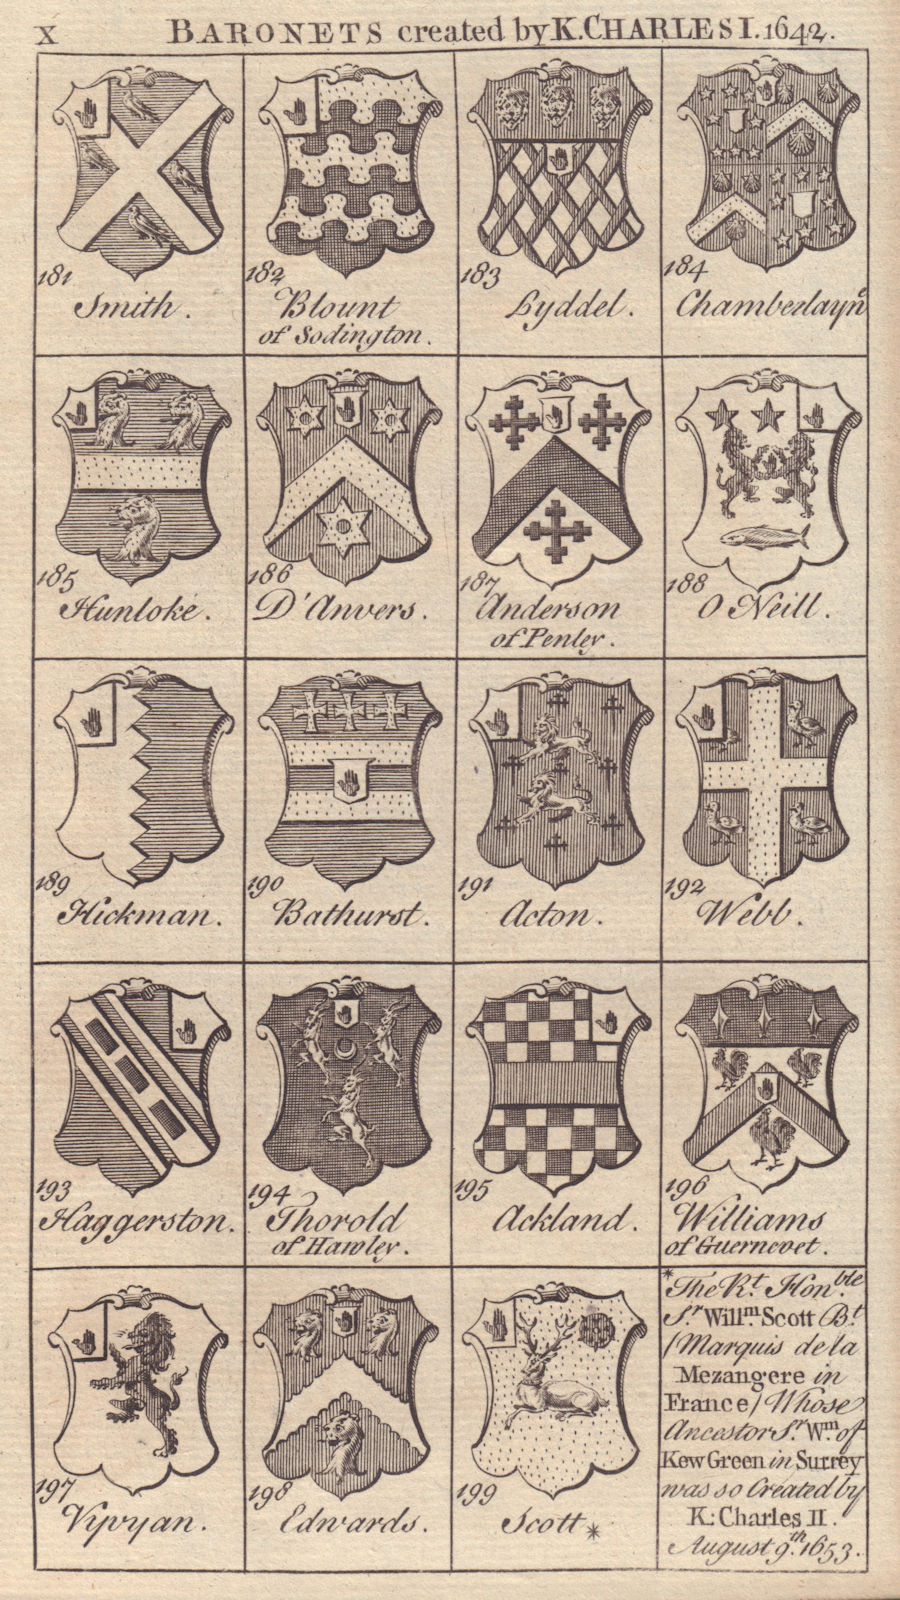 Charles I Baronets 1642 Smith Lyddel Hunloke Acton Webb Ackland Vyvyan… 1753